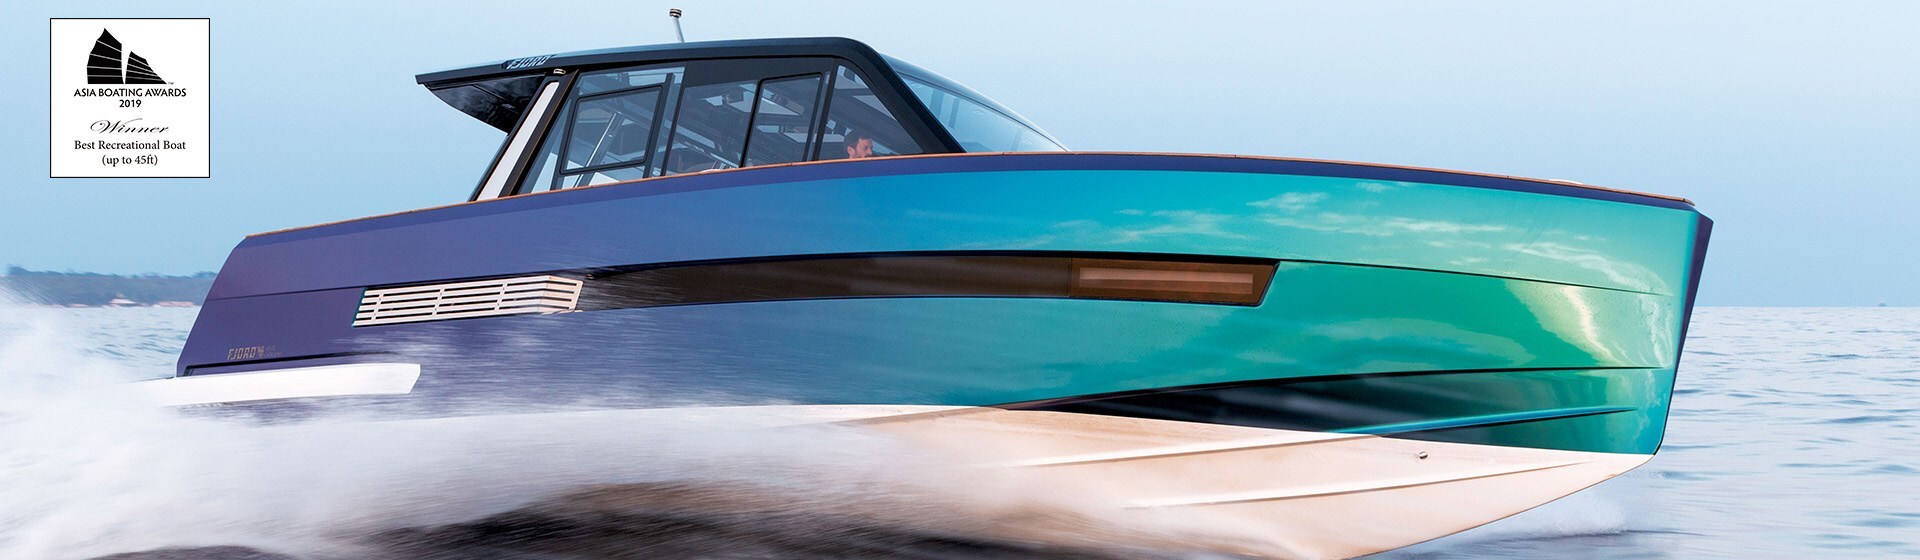 Majestätisches farbiges Hochleistungs-Motorboot mit Deckskabine auf schneller Fahrt